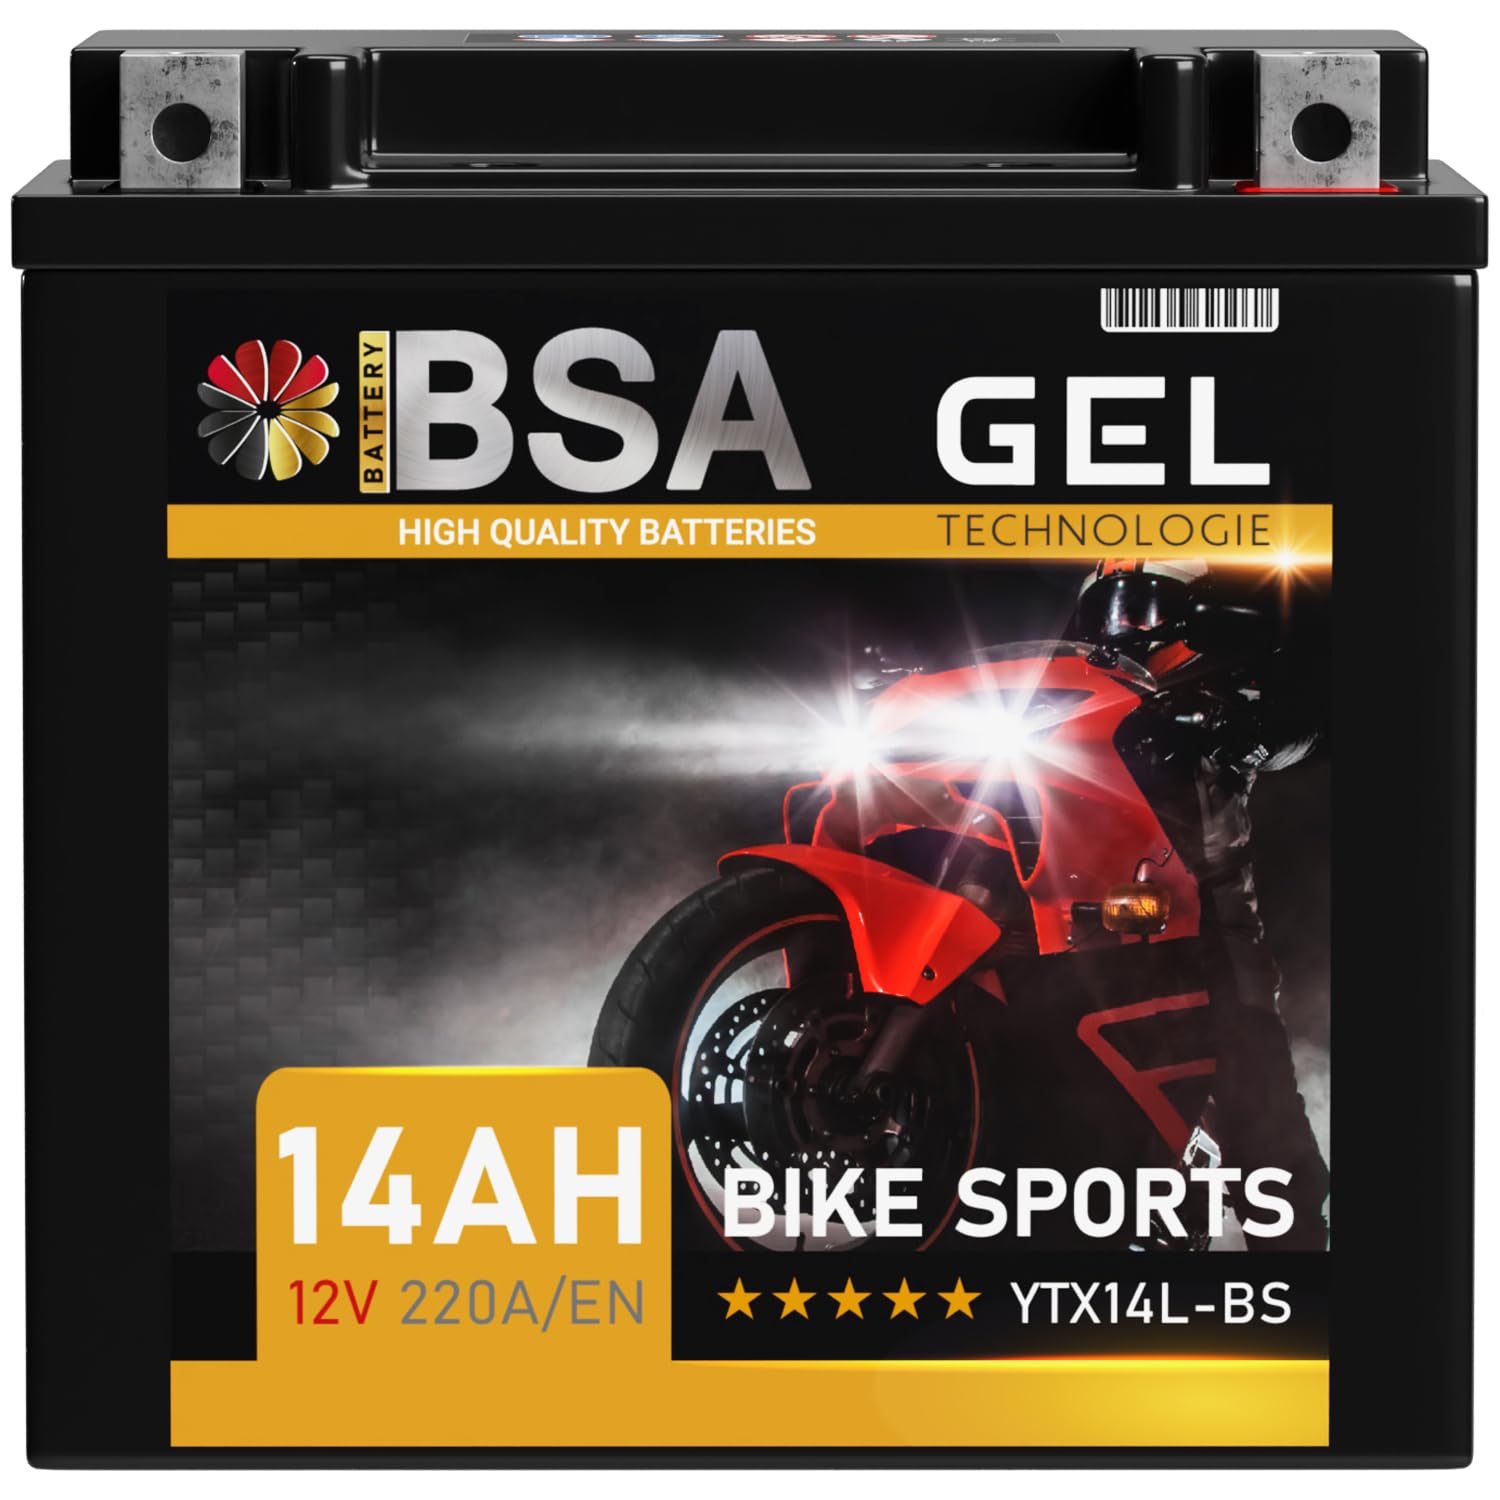 BSA YTX14L-BS GEL Roller Batterie 12V 14Ah 220A/EN Motorradbatterie doppelte Lebensdauer entspricht HVT-03 51216 HVT-3 vorgeladen auslaufsicher wartungsfrei von BSA BATTERY HIGH QUALITY BATTERIES